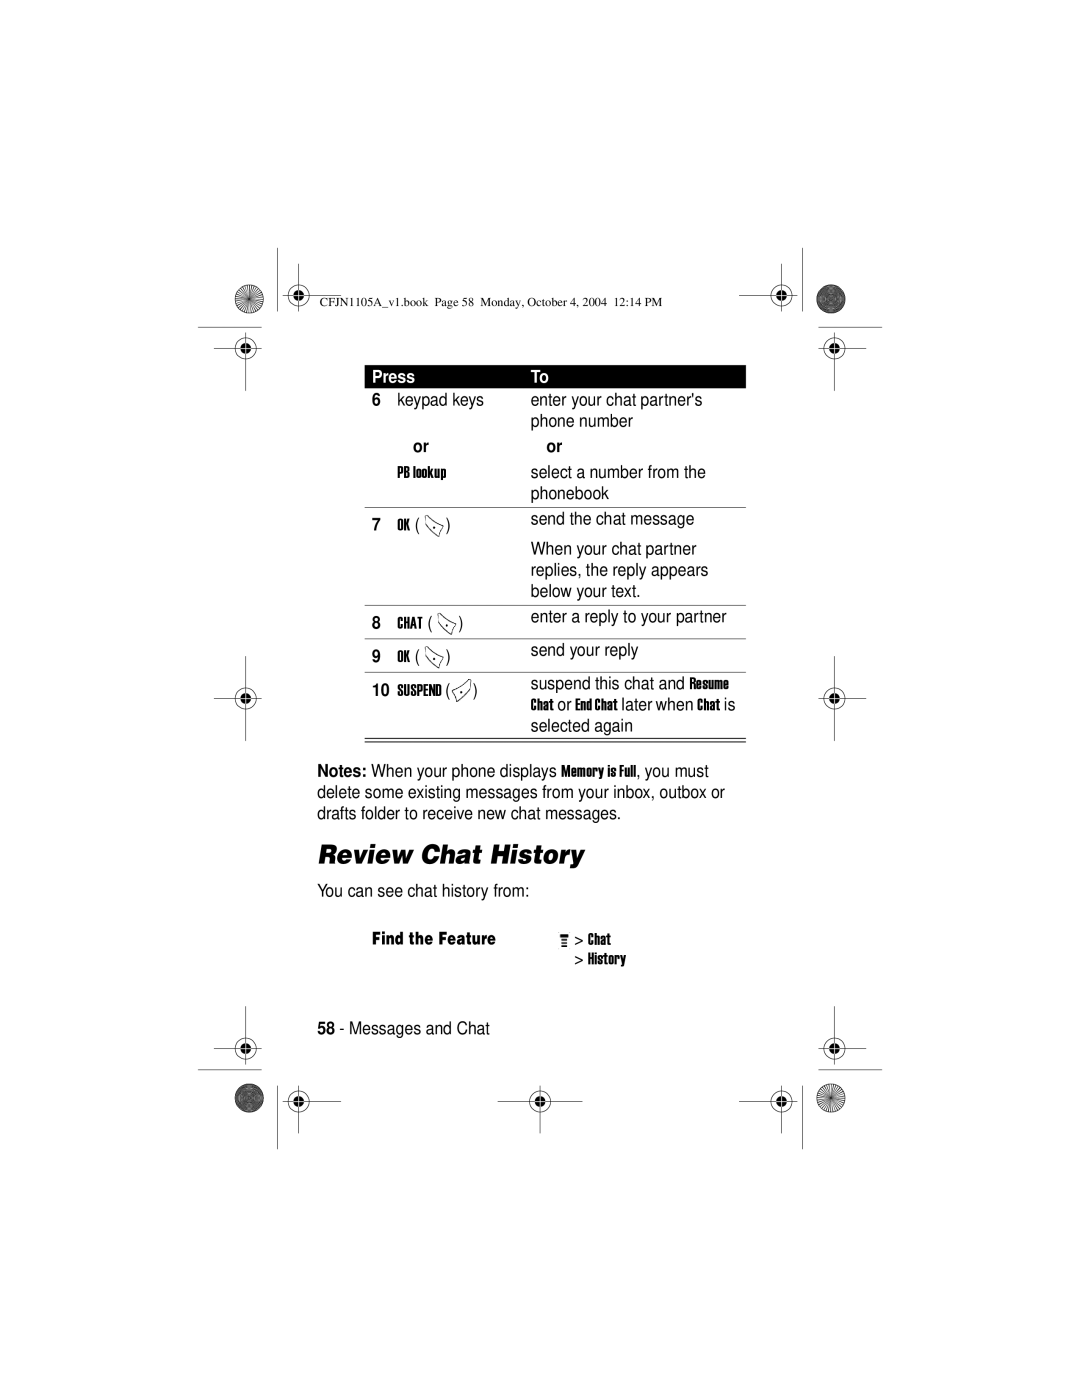 Motorola C156, C155 manual Review Chat History 